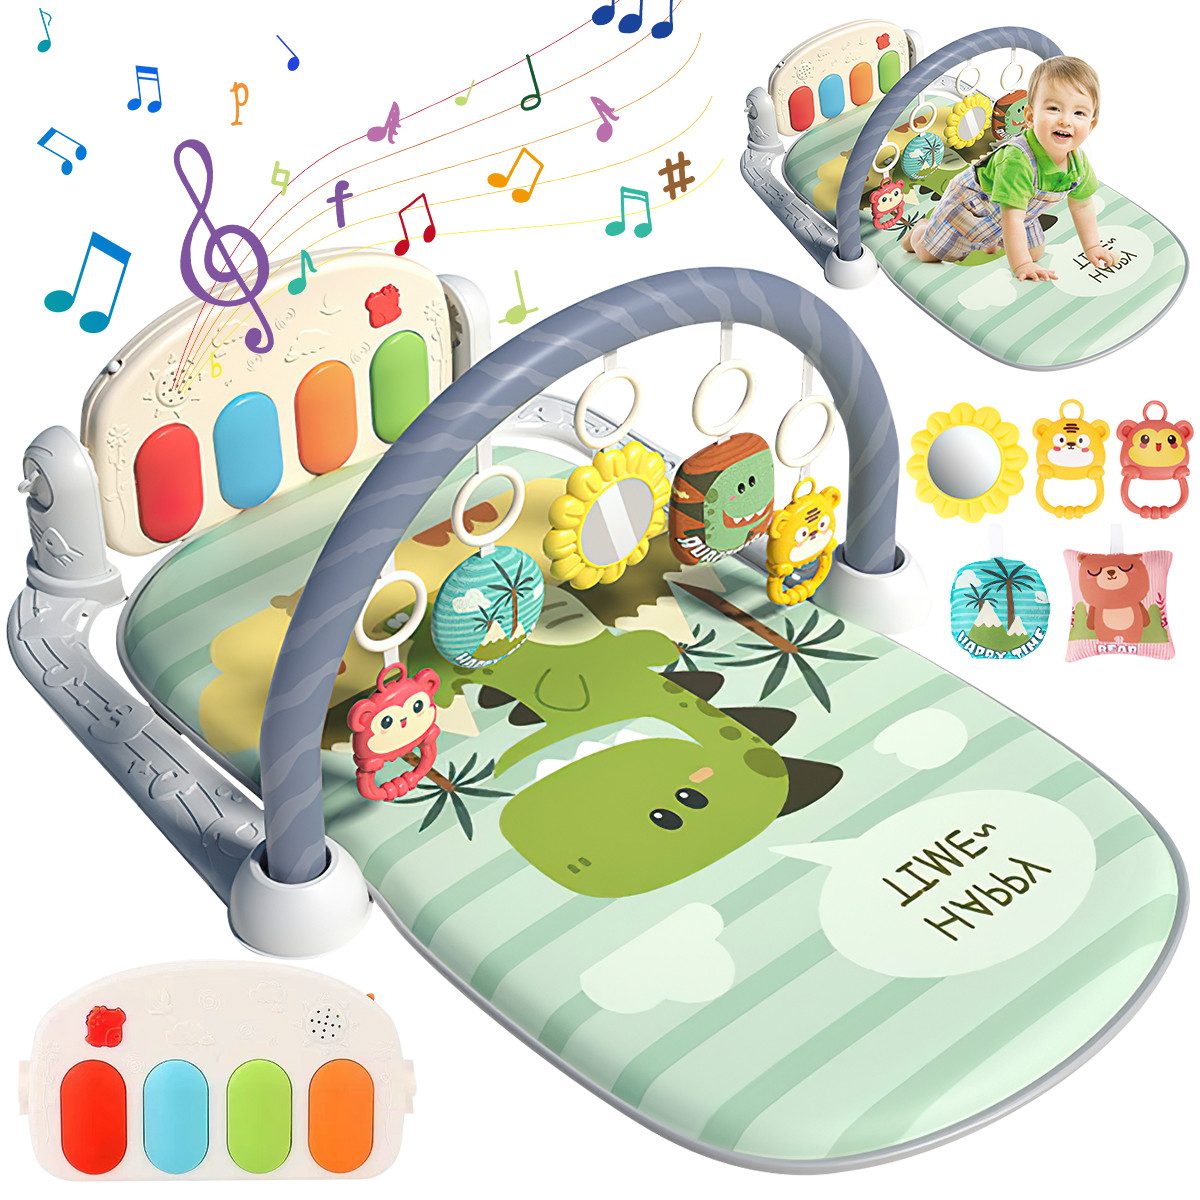 Krabbeldecke Spielmatte mit Spielbogen Baby Lernmatte Spieldecke Erlebnisdecke, GOOLOO, mit Klavier, Licht, Musik, Spiegel Lernspielzeug Waschbar